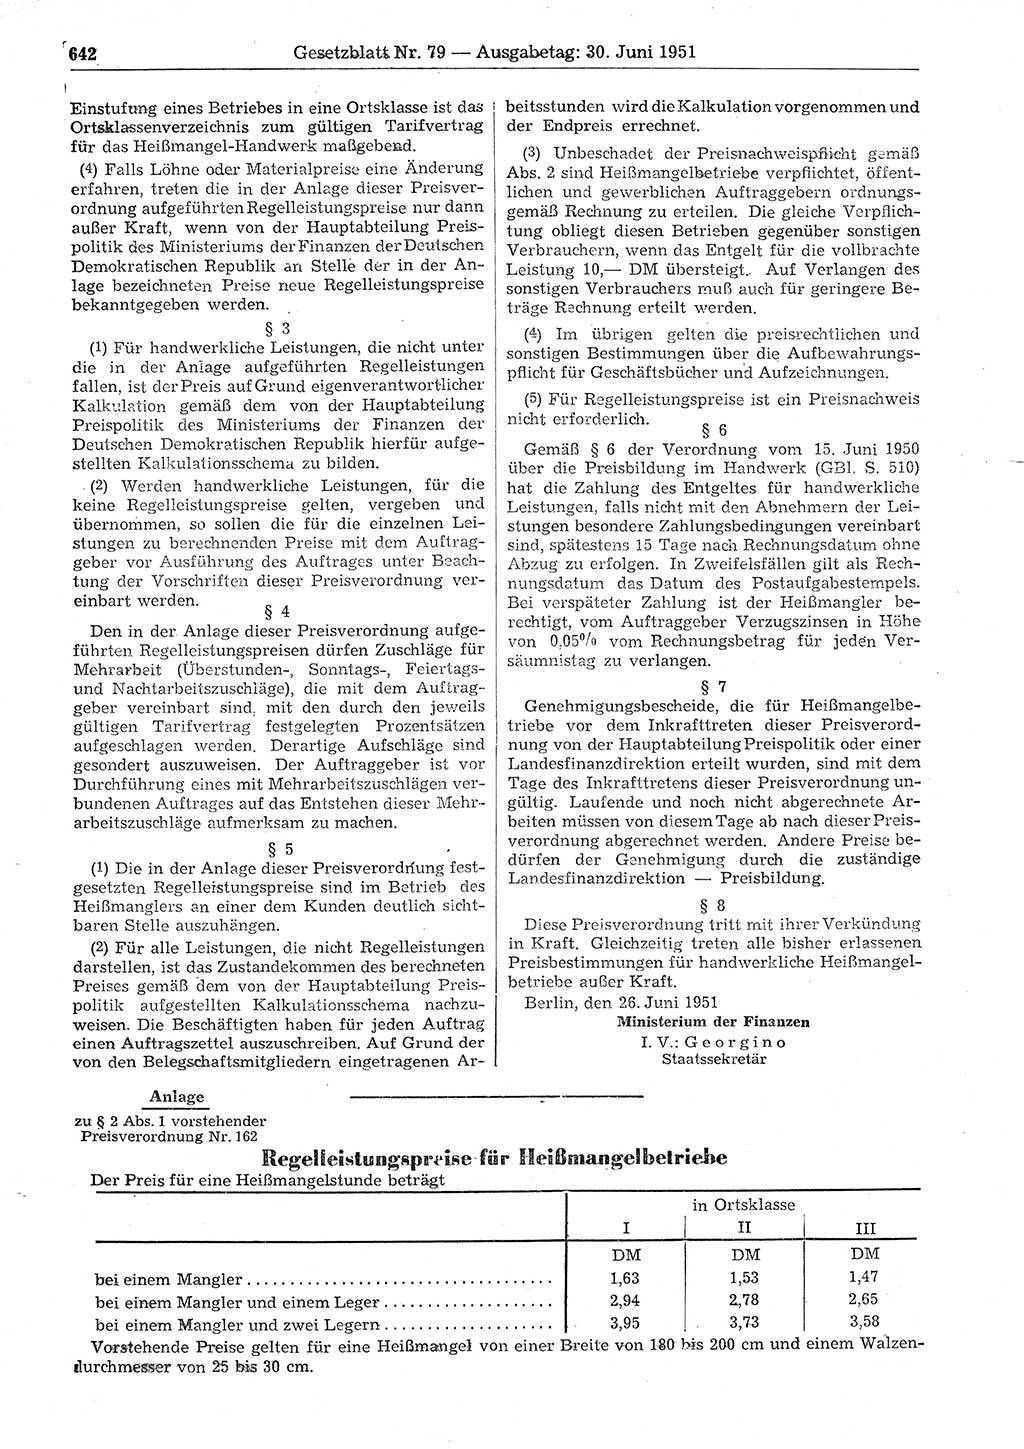 Gesetzblatt (GBl.) der Deutschen Demokratischen Republik (DDR) 1951, Seite 642 (GBl. DDR 1951, S. 642)